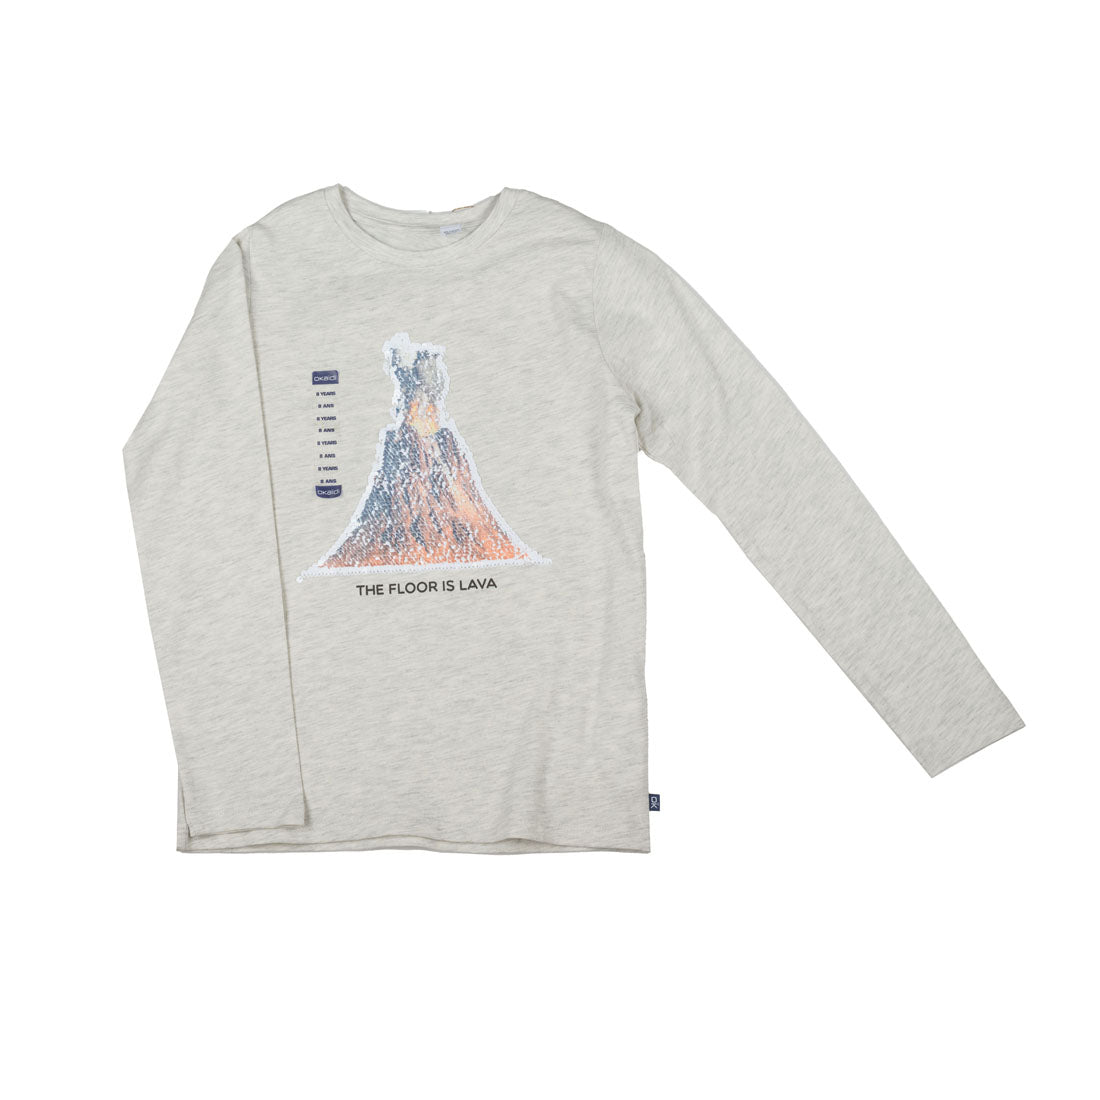 Okaidi Brand New T shirt For Girls - mymadstore.com